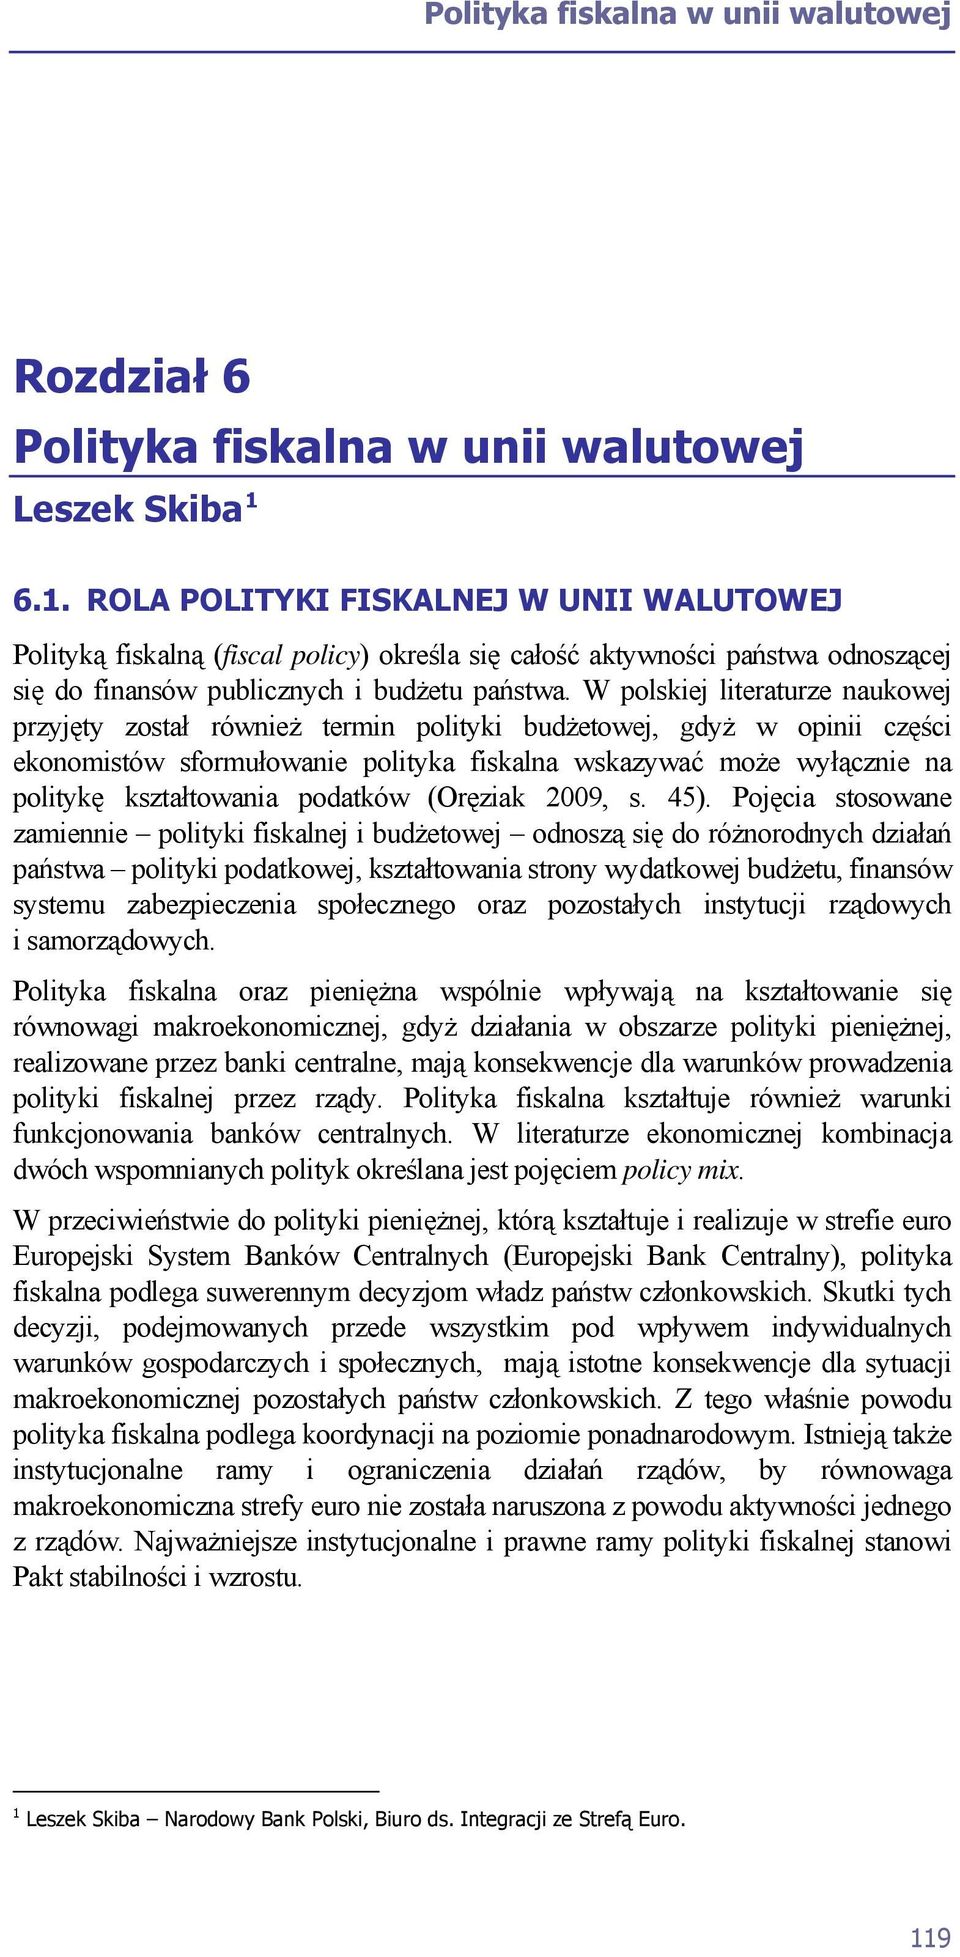 W polskiej literaturze naukowej przyjęty został również termin polityki budżetowej, gdyż w opinii części ekonomistów sformułowanie polityka fiskalna wskazywać może wyłącznie na politykę kształtowania